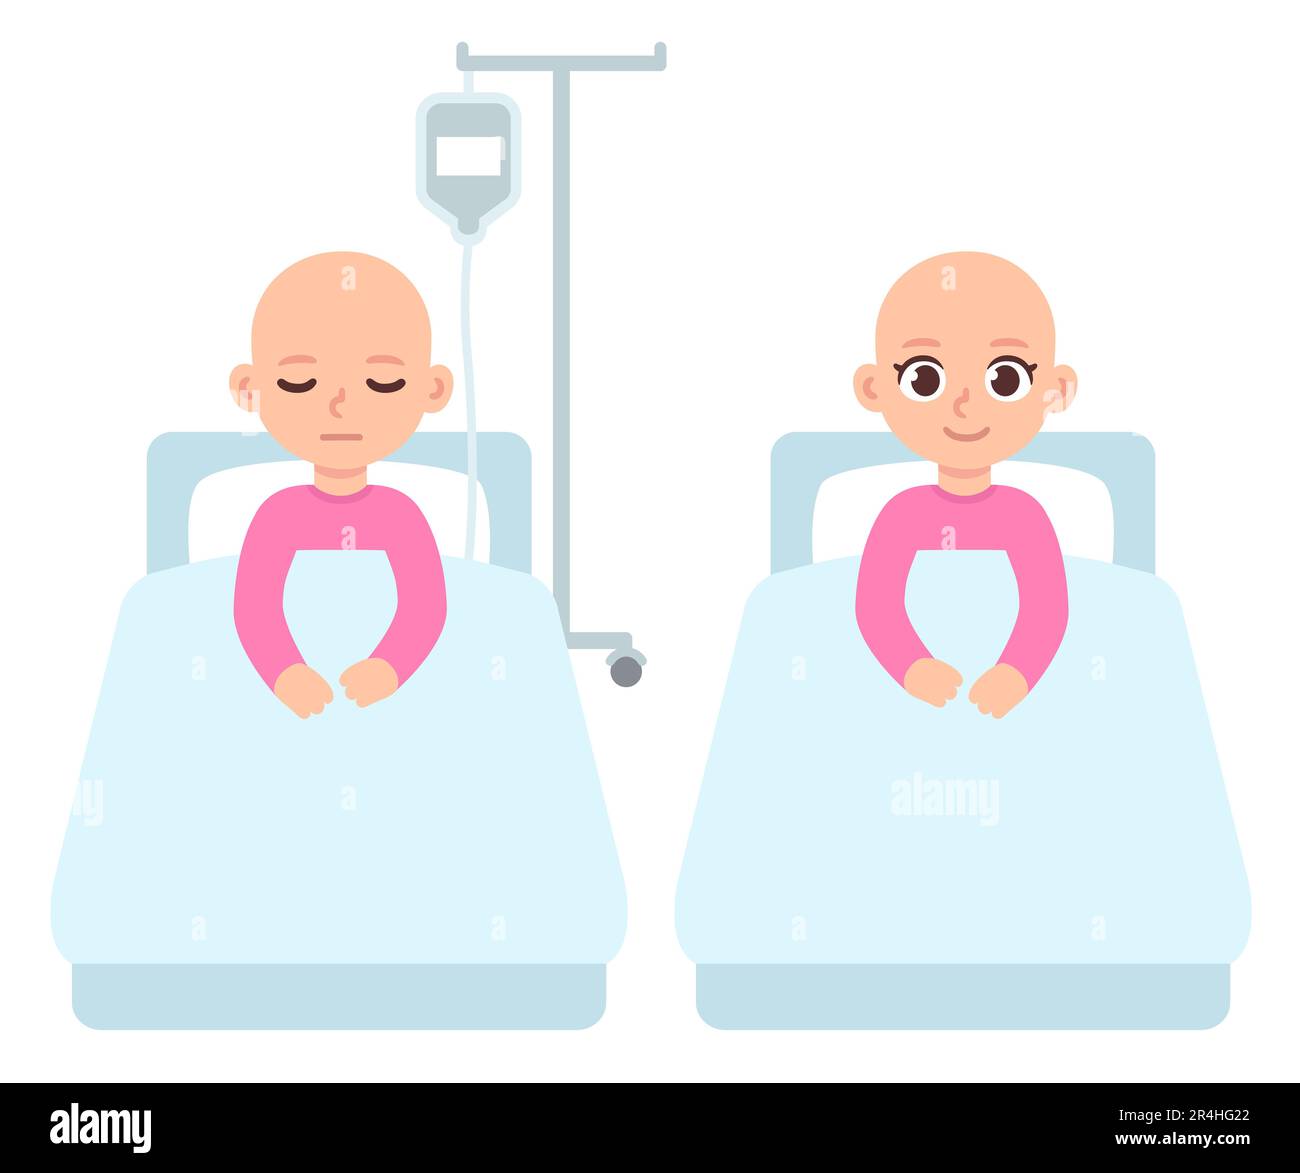 Krebskrankes Kind, kleines Mädchen im Krankenhausbett unter IV-Chemotherapie. Süße Cartoon-Illustration im flachen Vektorstil. Stock Vektor